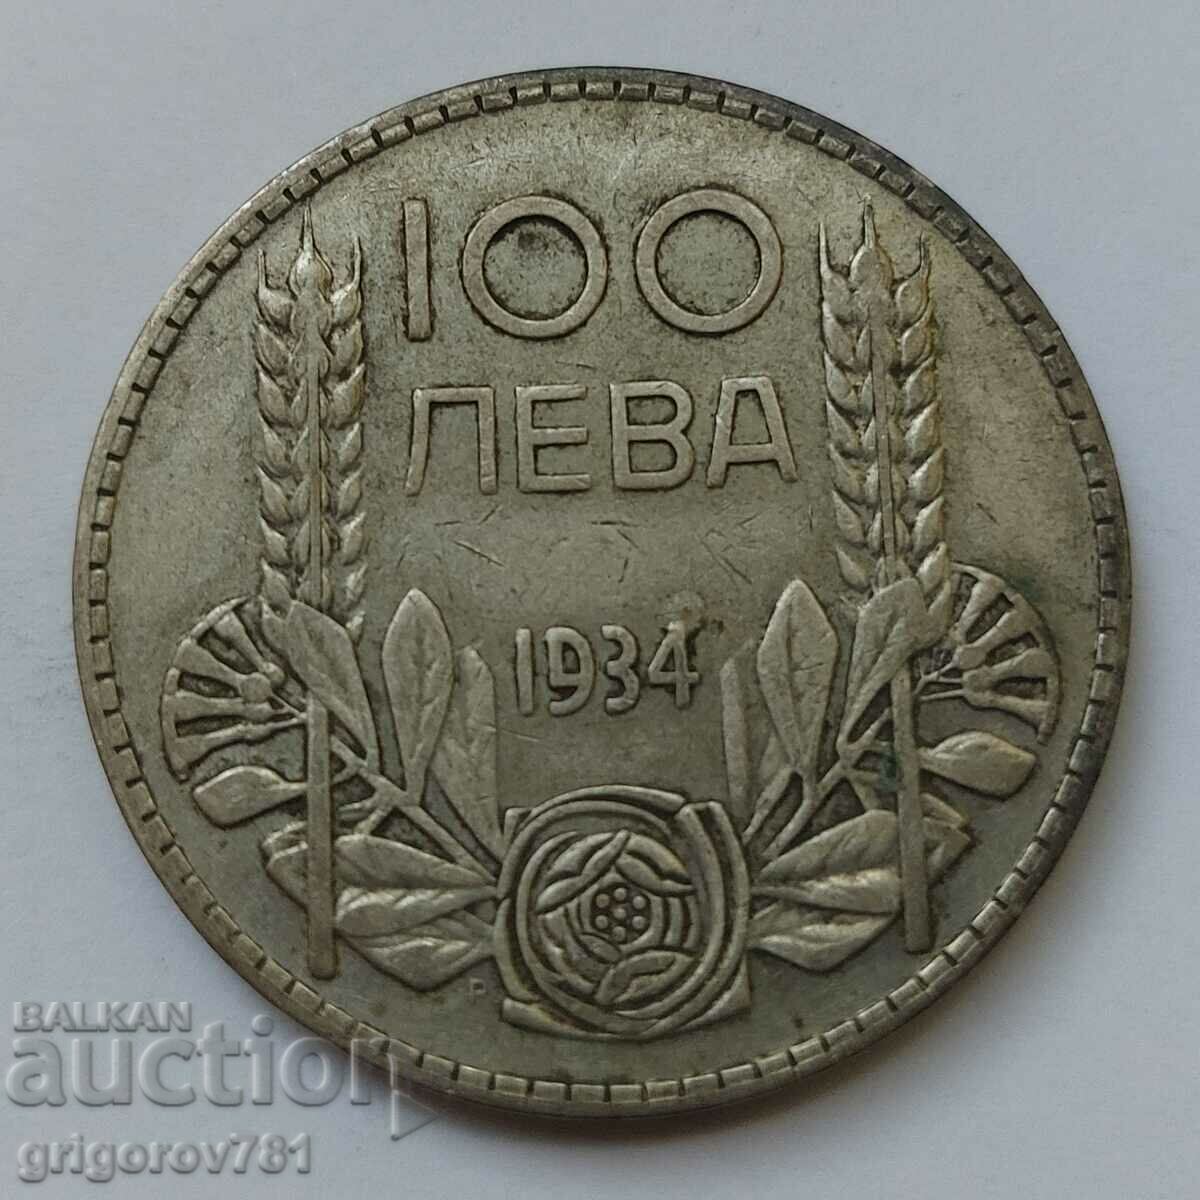 100 leva silver Bulgaria 1934 - silver coin #5